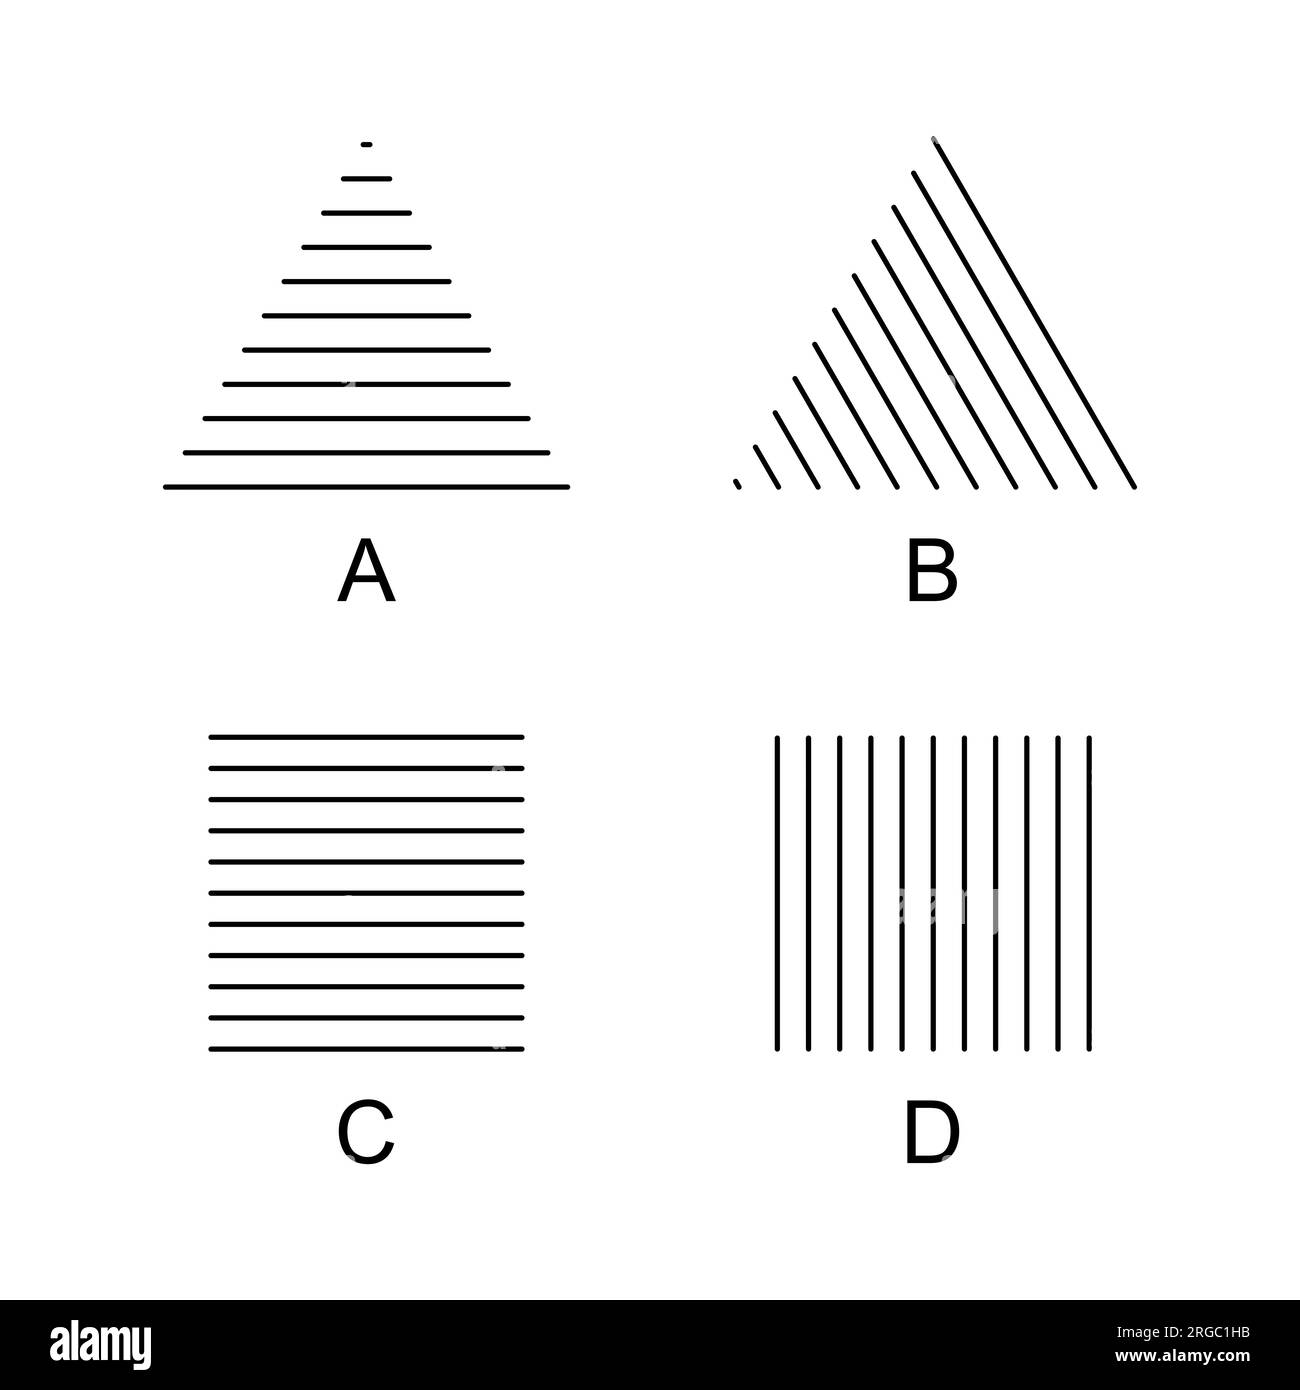 Triangoli e quadrati Helmholtz illusioni ottiche. Un triangolo appare più alto (A), sembra muoversi a destra (B), un quadratino più alto (C) o più largo (D). Foto Stock